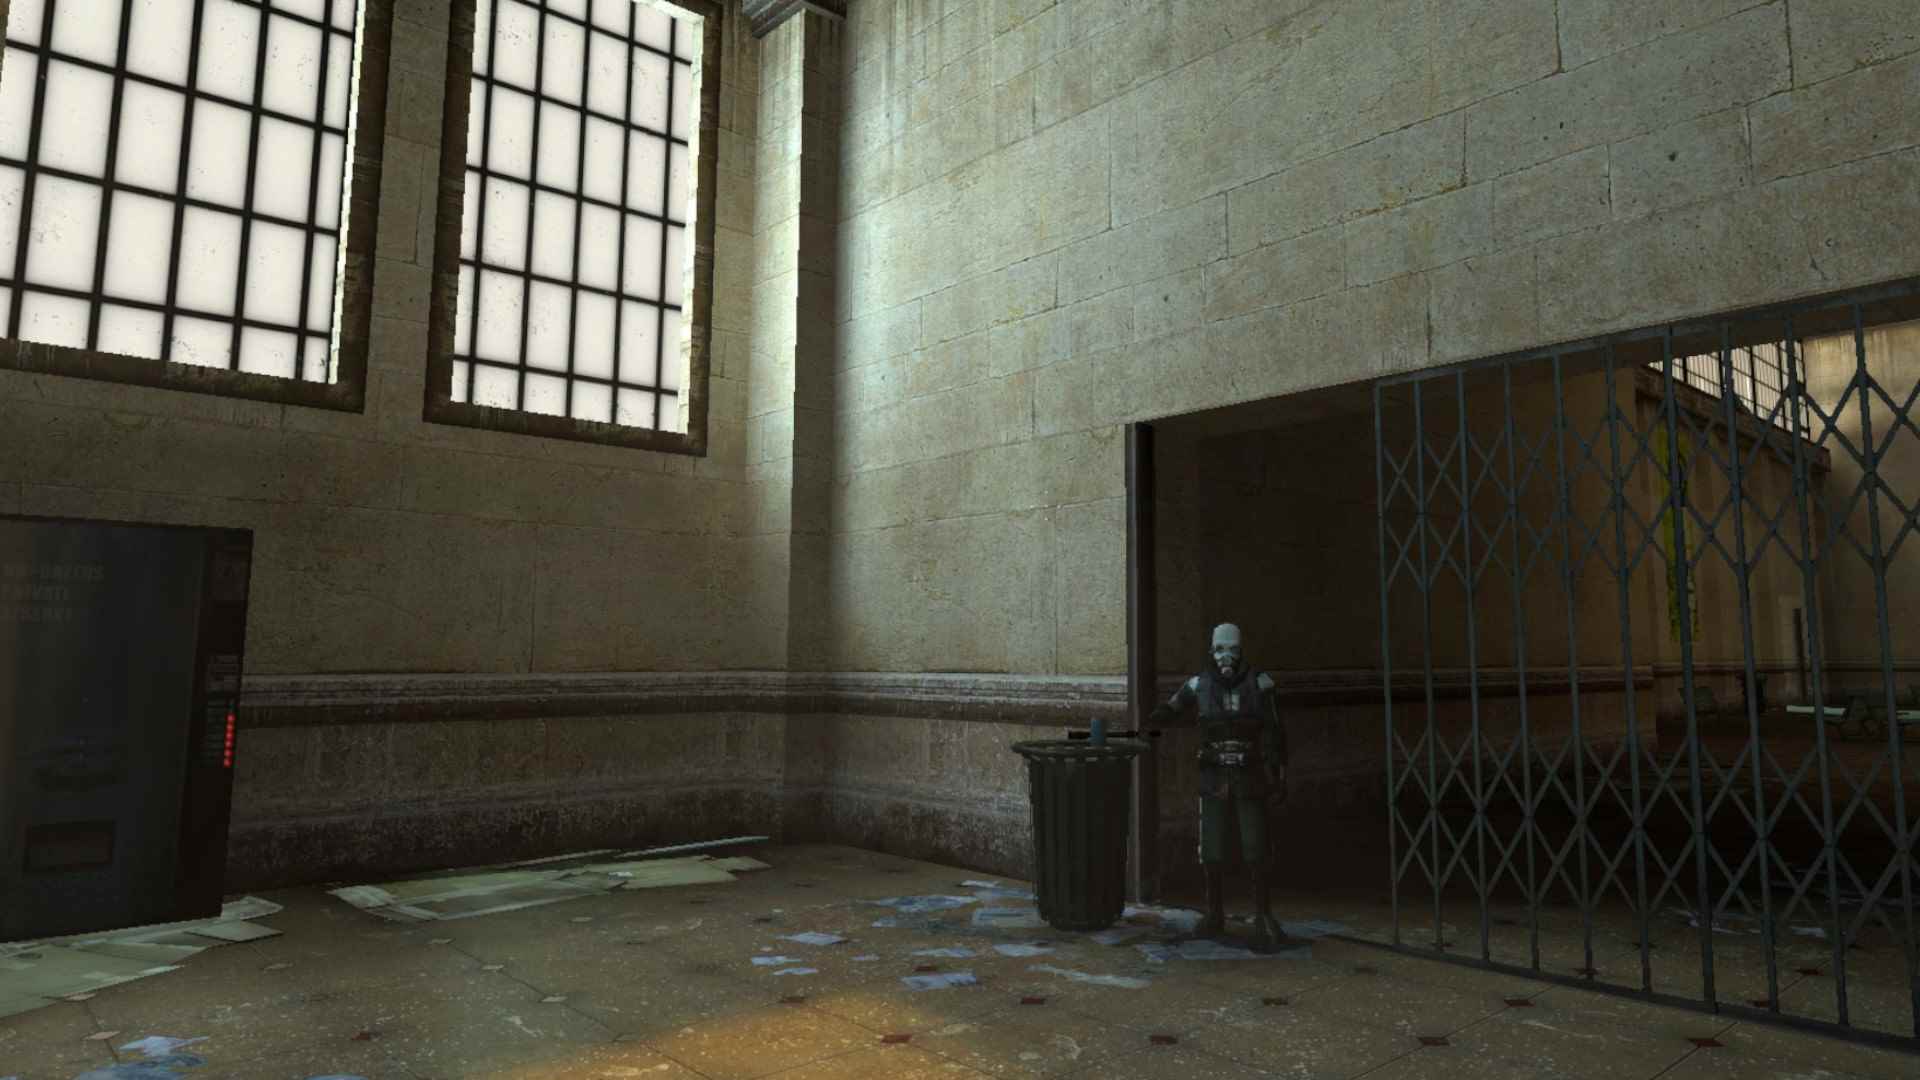 Half-Life 2 Bölüm 1: Siyah isyan teçhizatı ve beyaz maske giymiş bir Combine askeri, City 17'nin harap olmuş tren istasyonundan bir kutu almanızı istiyor